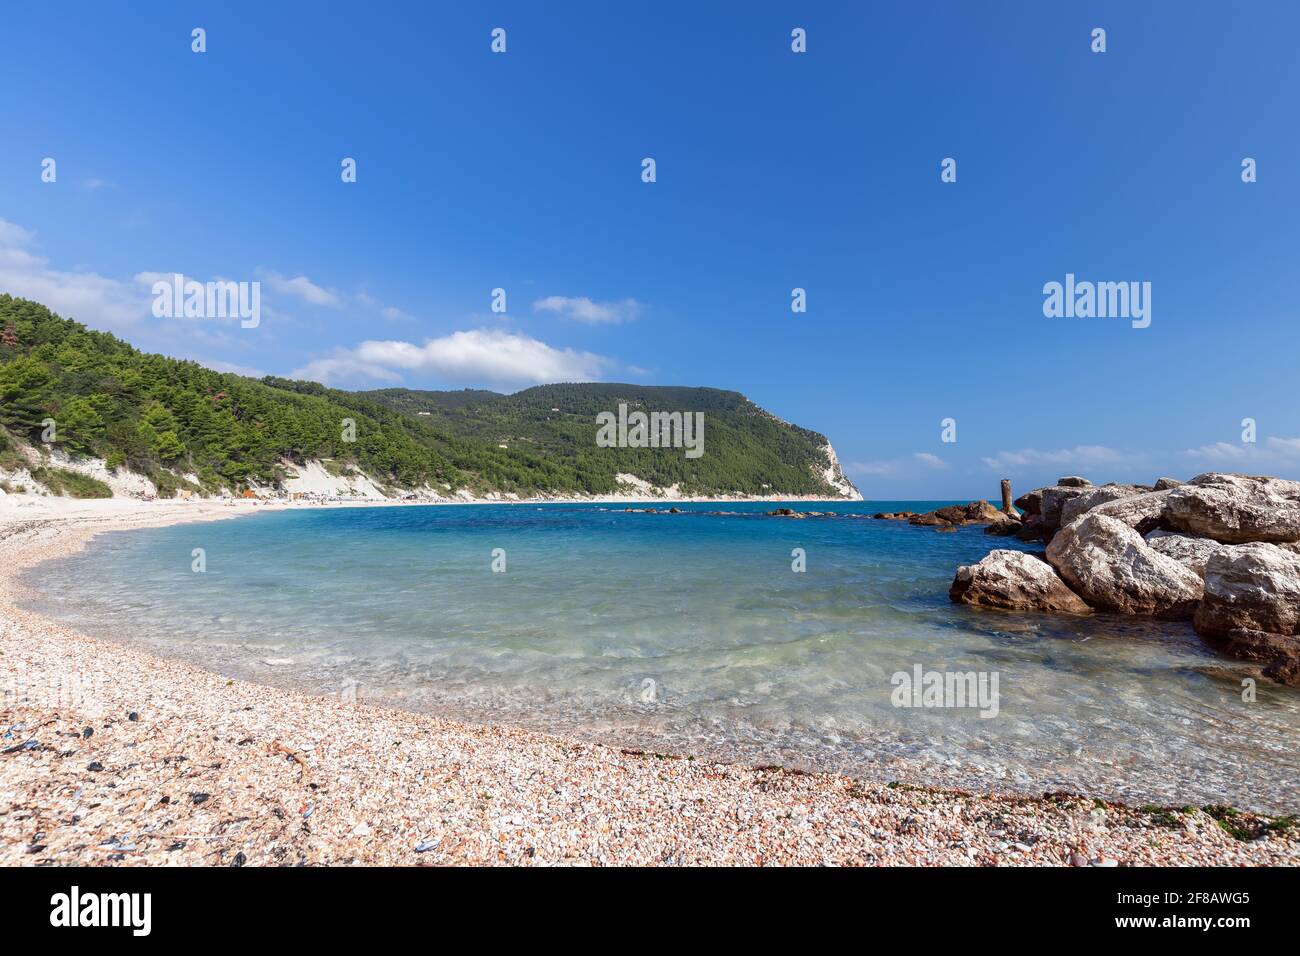 Morning on a beautiful Urbani Beach of the coast of riviera del Conero. Sirolo, Italy Stock Photo